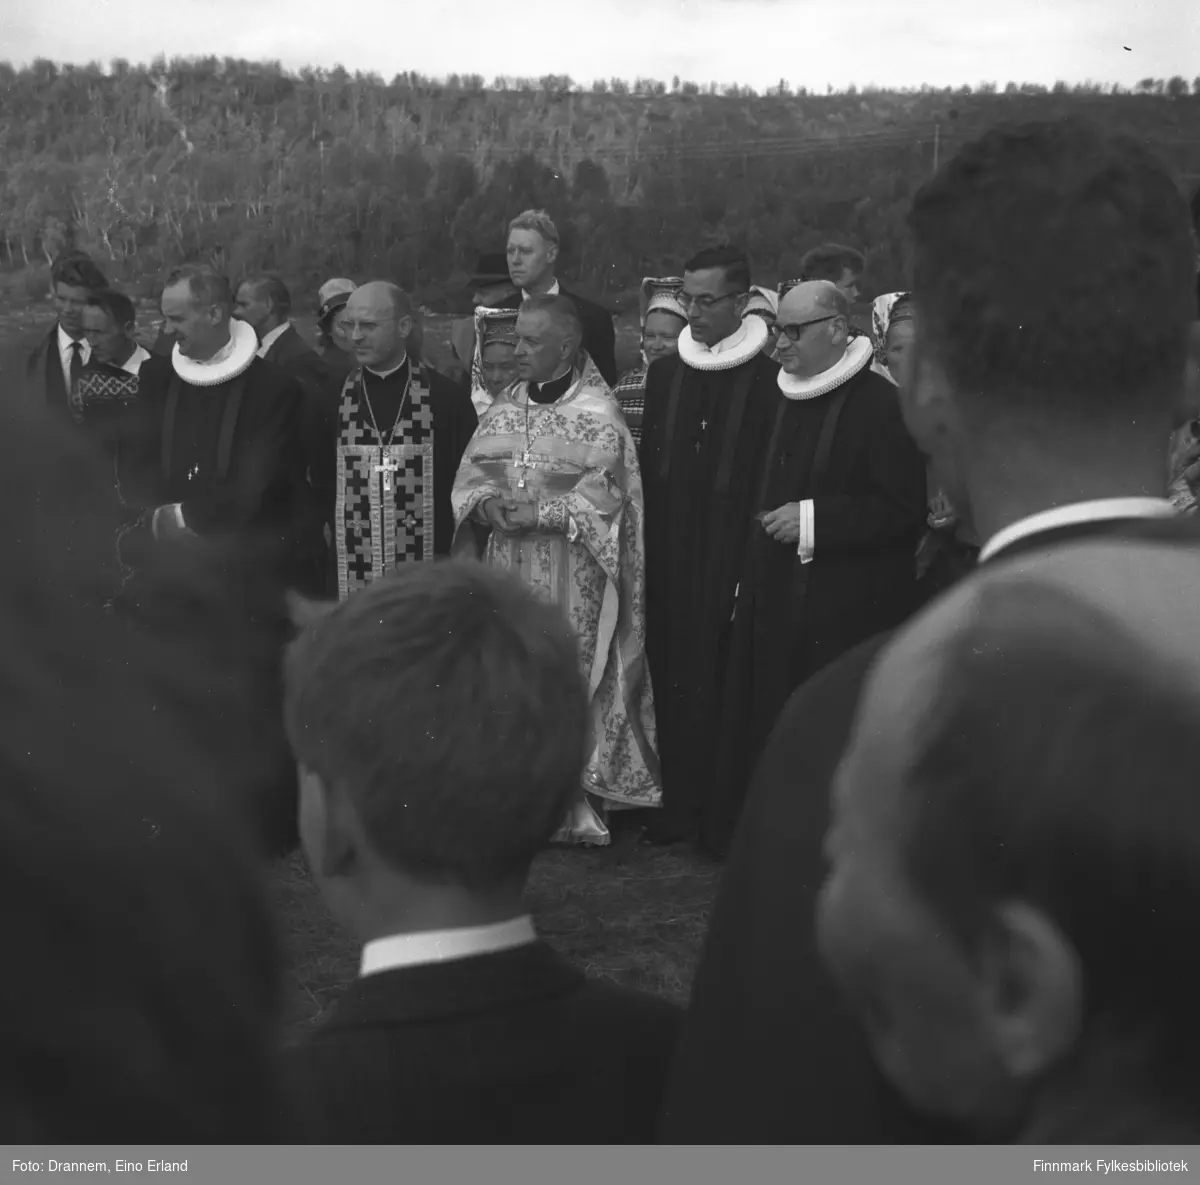 Ortodoks gudstjeneste foran Sankt Georgs kapell i Neiden i Finnmark. To finske ortodokse prester i midten , til venstre Filadelfos Laakso og til høyre Yrjö Räme. Presten til venstre, i samarie og pipekrage, er Erik Schytte Blix, (1921-1983. Presten til høyre, også i samarie og pipekrage, er Ernst Galschiødt, (1906-1993). Bildet må være tatt i 1965 eller senere. Tradisjonen med ortodokse gudstjenester ble gjenopptatt dette året. Sankt Georgs kapell er Finnmarks eldste kirkehus og det eldste ortodokse gudshus i Norge. Det er fra 1565 og ble bygd av Trifon. Kapellet er en liten, lav tømmerbygning. kun 10 kvadratmeter. Kapellet er ikke bygget til liturgisk bruk, men var nok tenkt som bønnehus og gravkapell. Kapellet har stor religiøs og historisk betydning for skoltene (skoltesamer), et finsk-ugrisk folkeslag som tradisjonelt tilhører Den ortodokse kirke. Hver sommer holdes det liturgi på stedet. 

